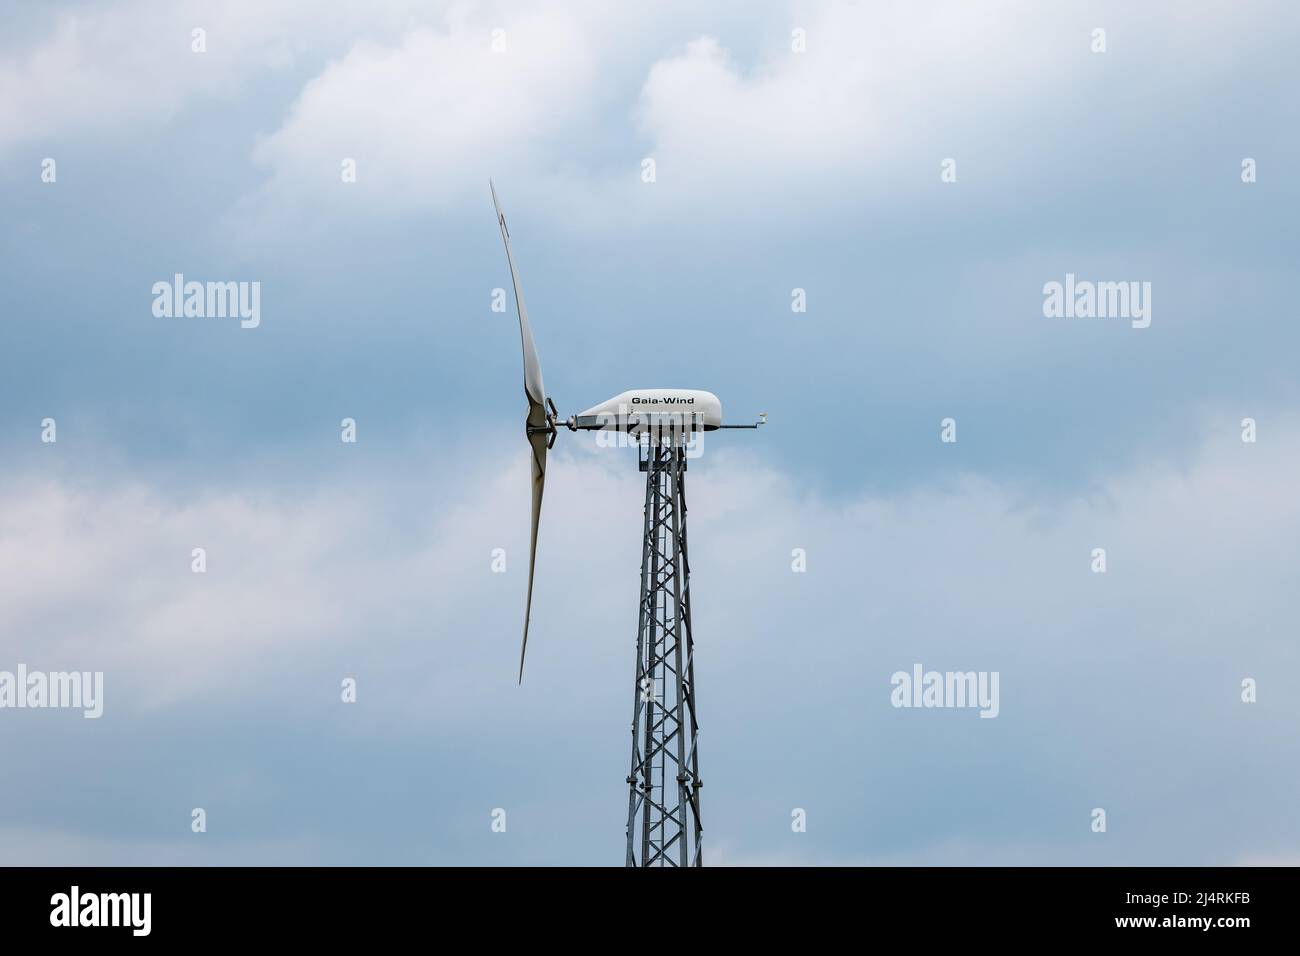 Gaia turbina de energía renovable torre y palas contra un cielo azul nublado, Escocia, Reino Unido Foto de stock